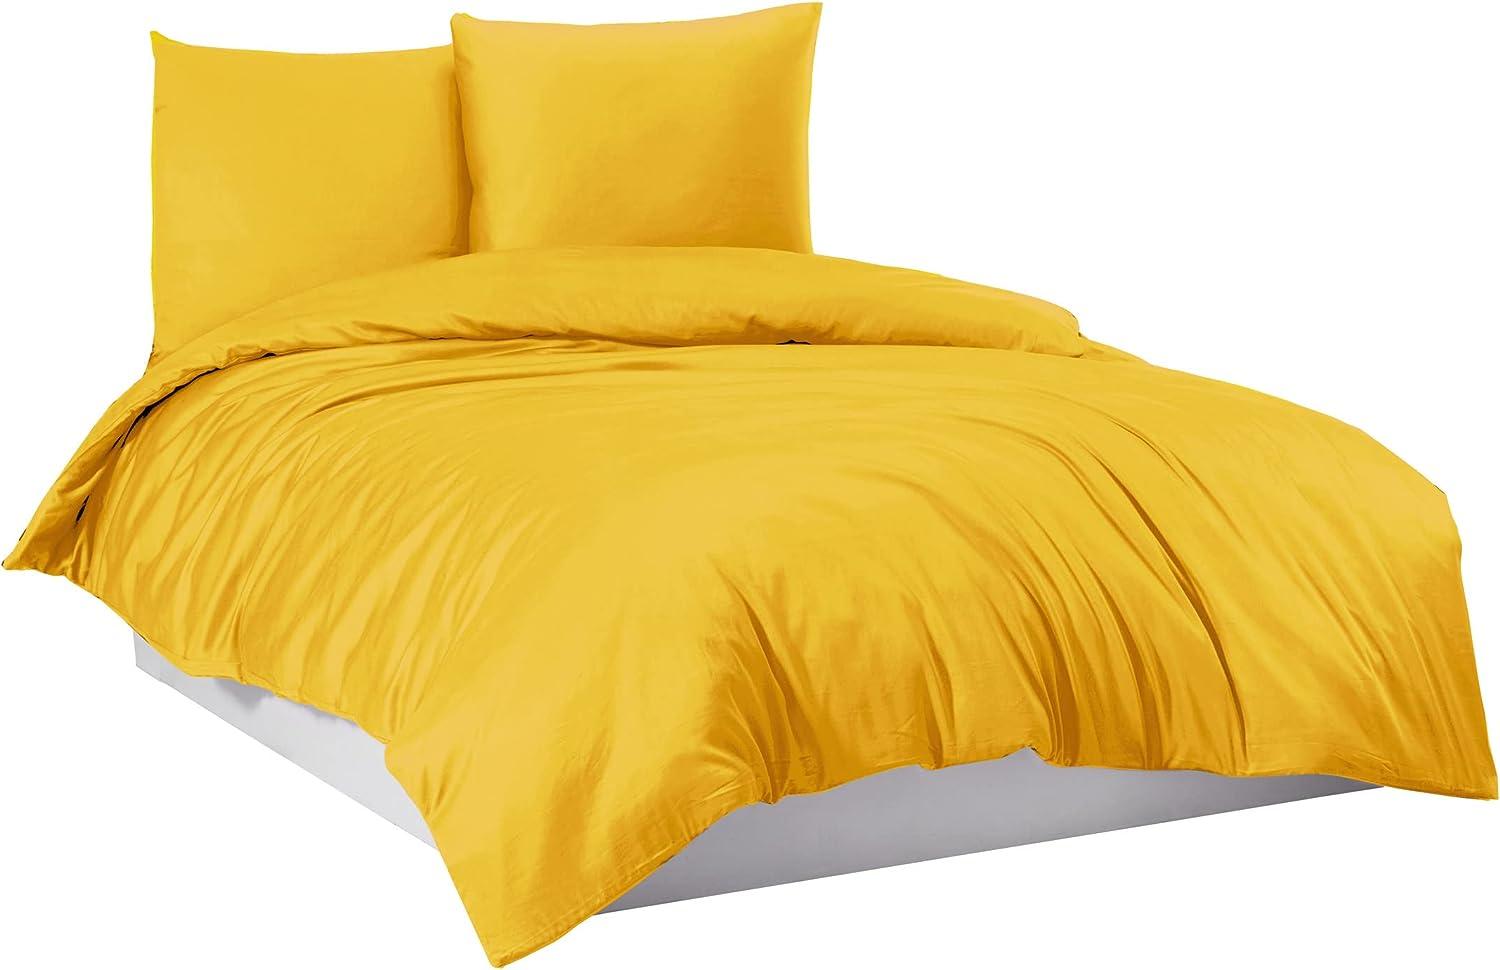 Mixibaby Bettwäsche Bettgarnitur Bettbezug 100% Baumwolle Farbe: Gelb, Größe:135 x 200 cm Bild 1